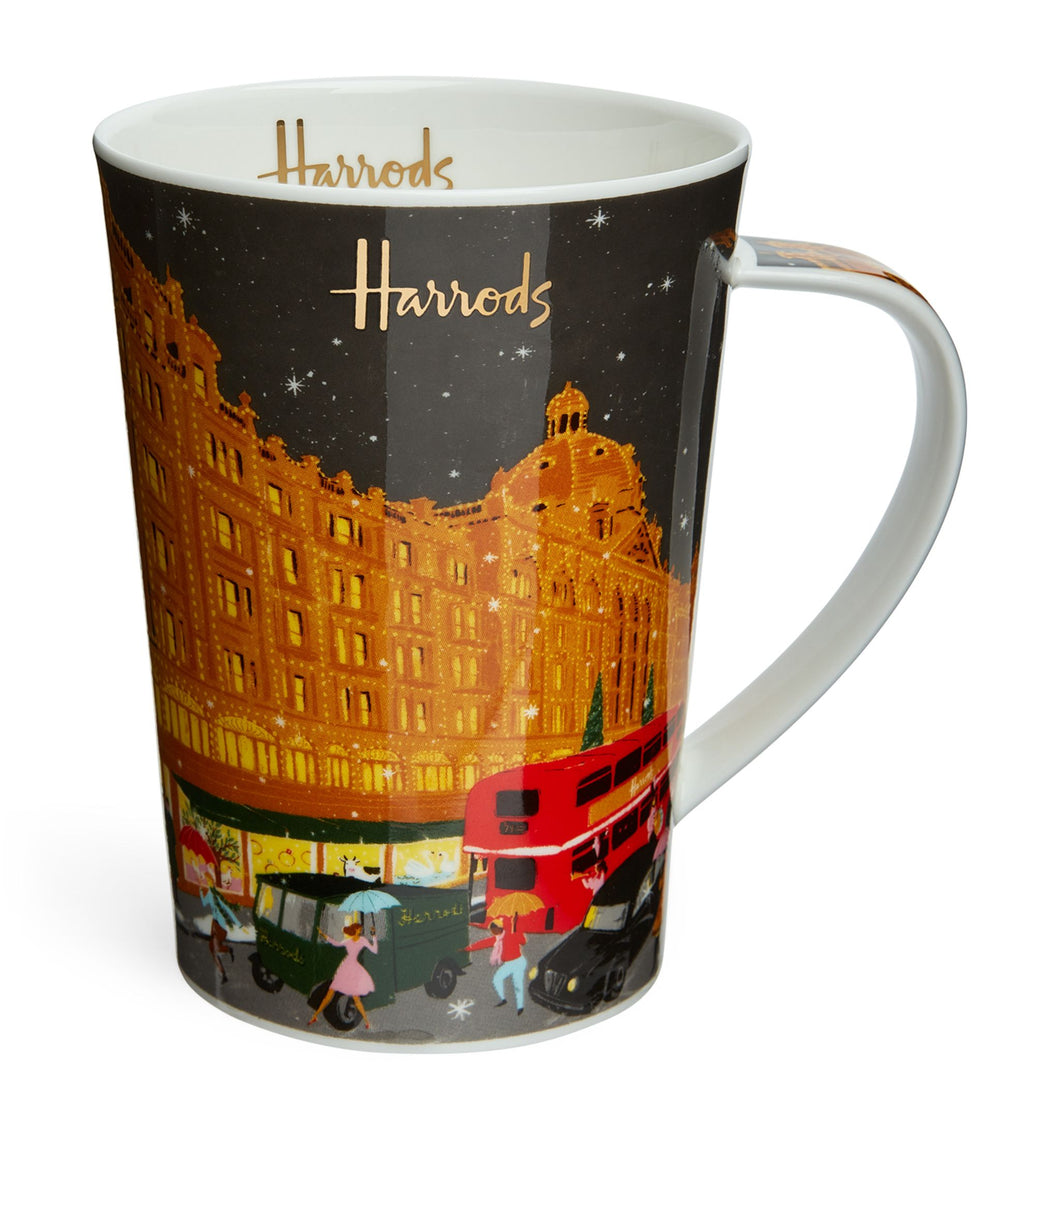 Harrods mug. كوب هارودز